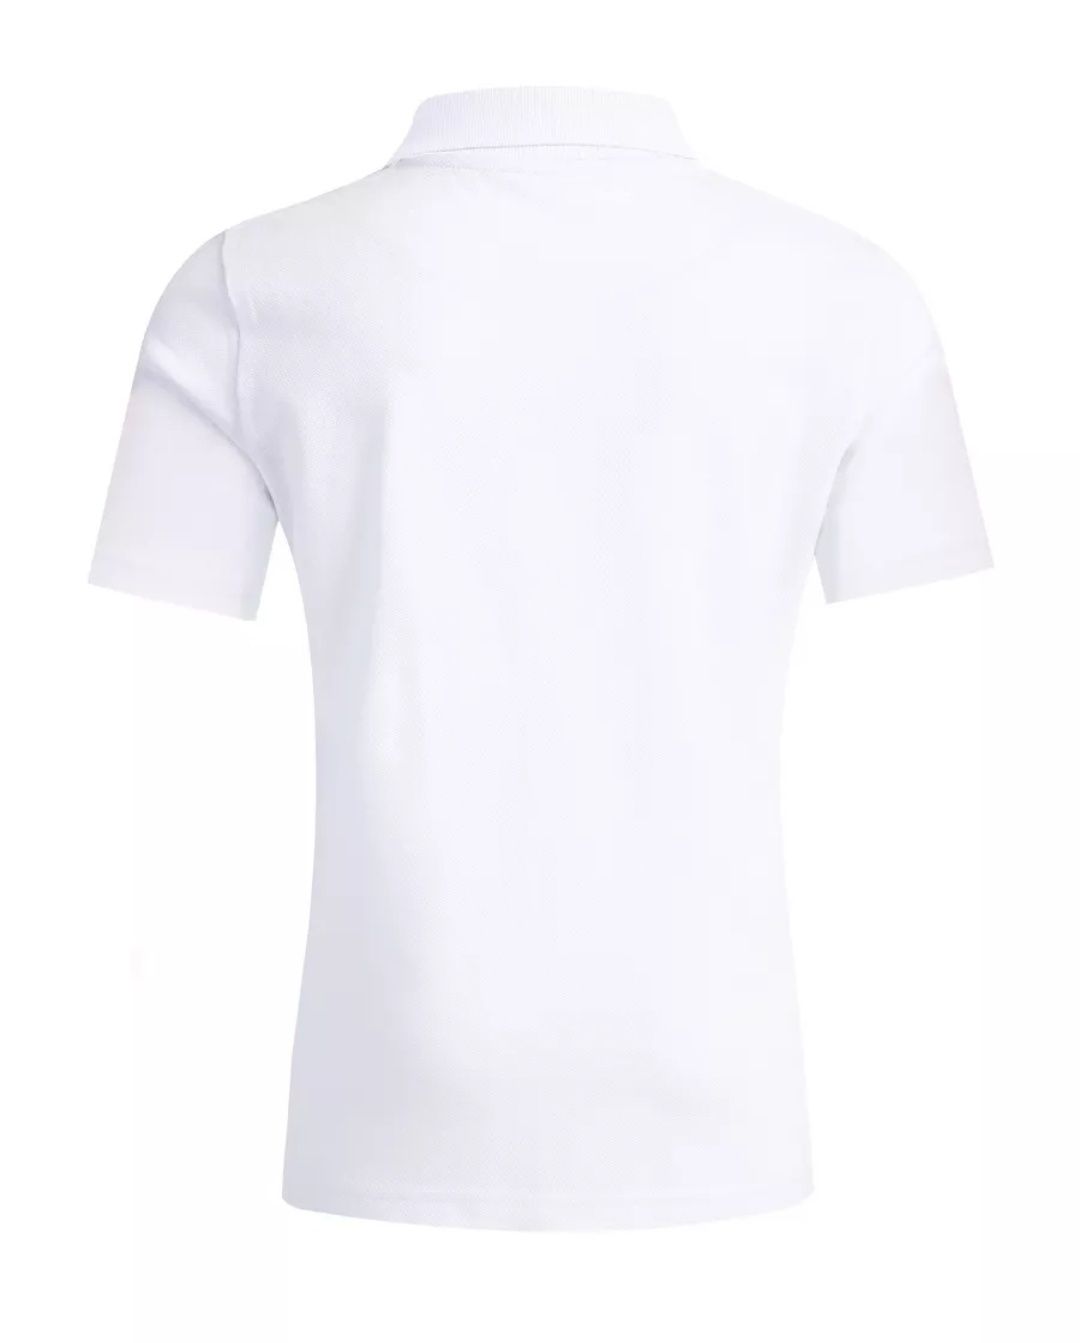 Белая футболка поло для мальчика